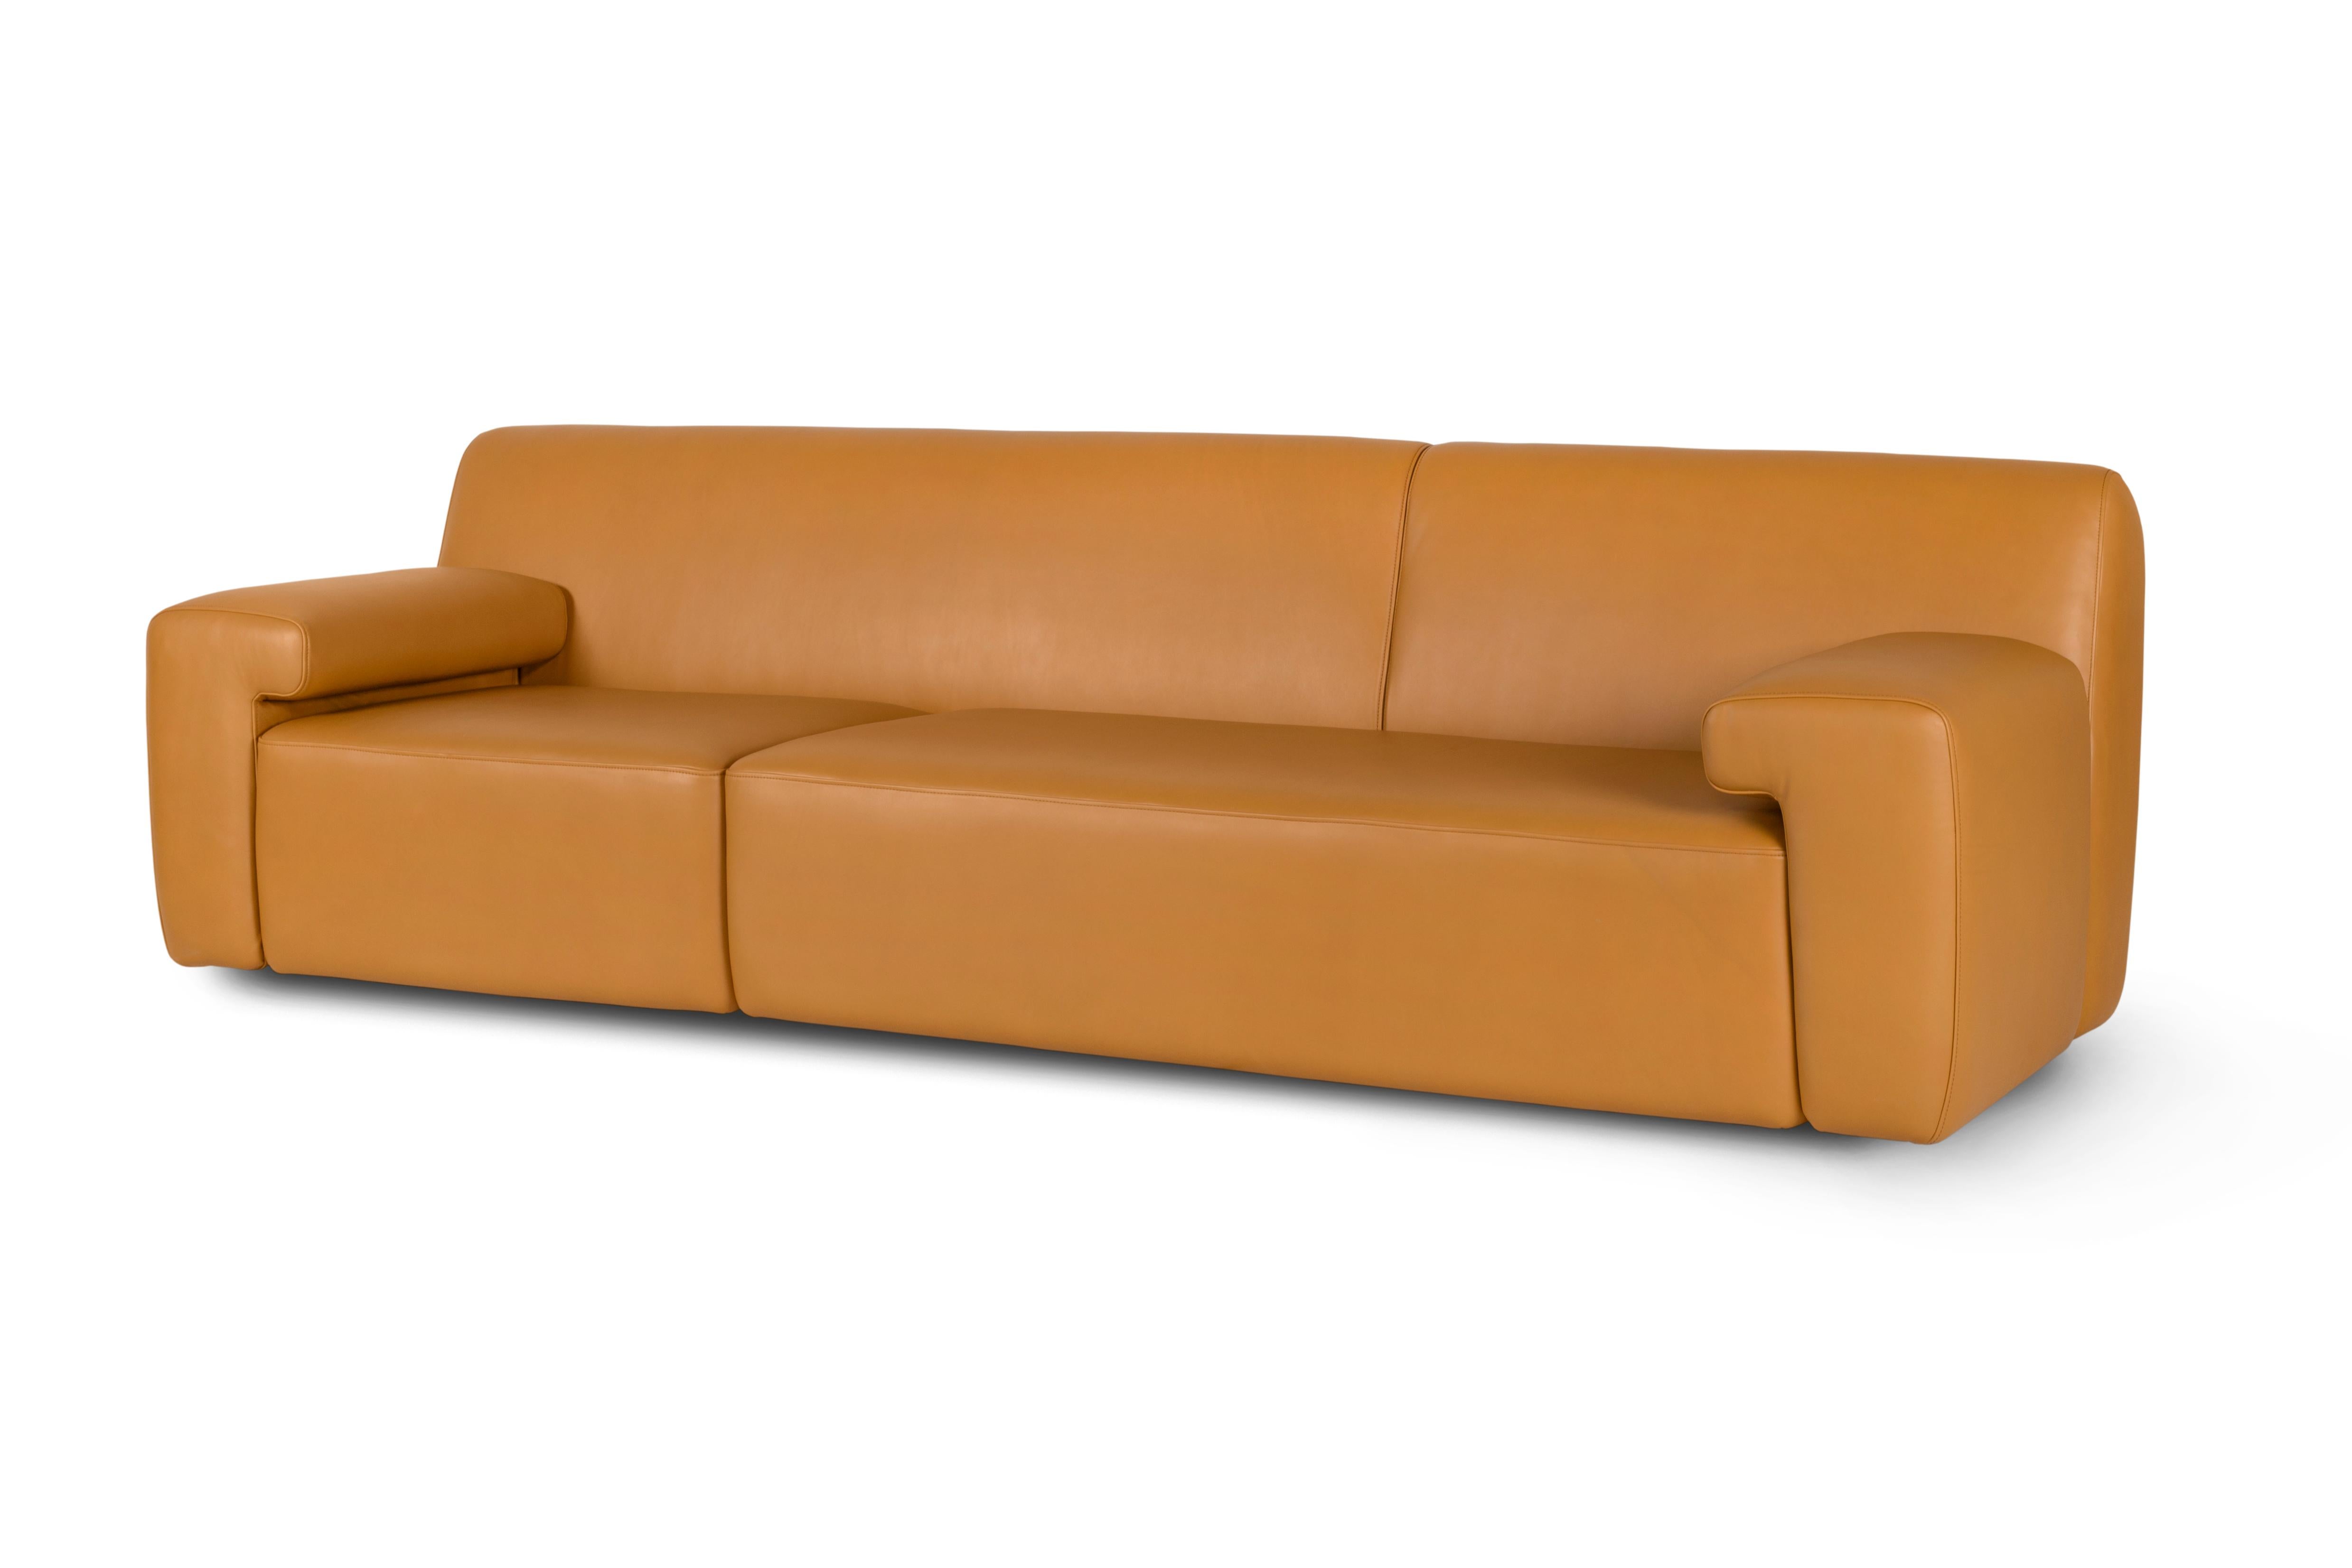 Almourol Sofa, Contemporary Collection, Handcrafted in Portugal - Europe by Greenapple.

Le canapé en cuir Almourol s'inspire des contours caractéristiques du château d'Almourol. Le design asymétrique du canapé en cuir ressemble à la forme